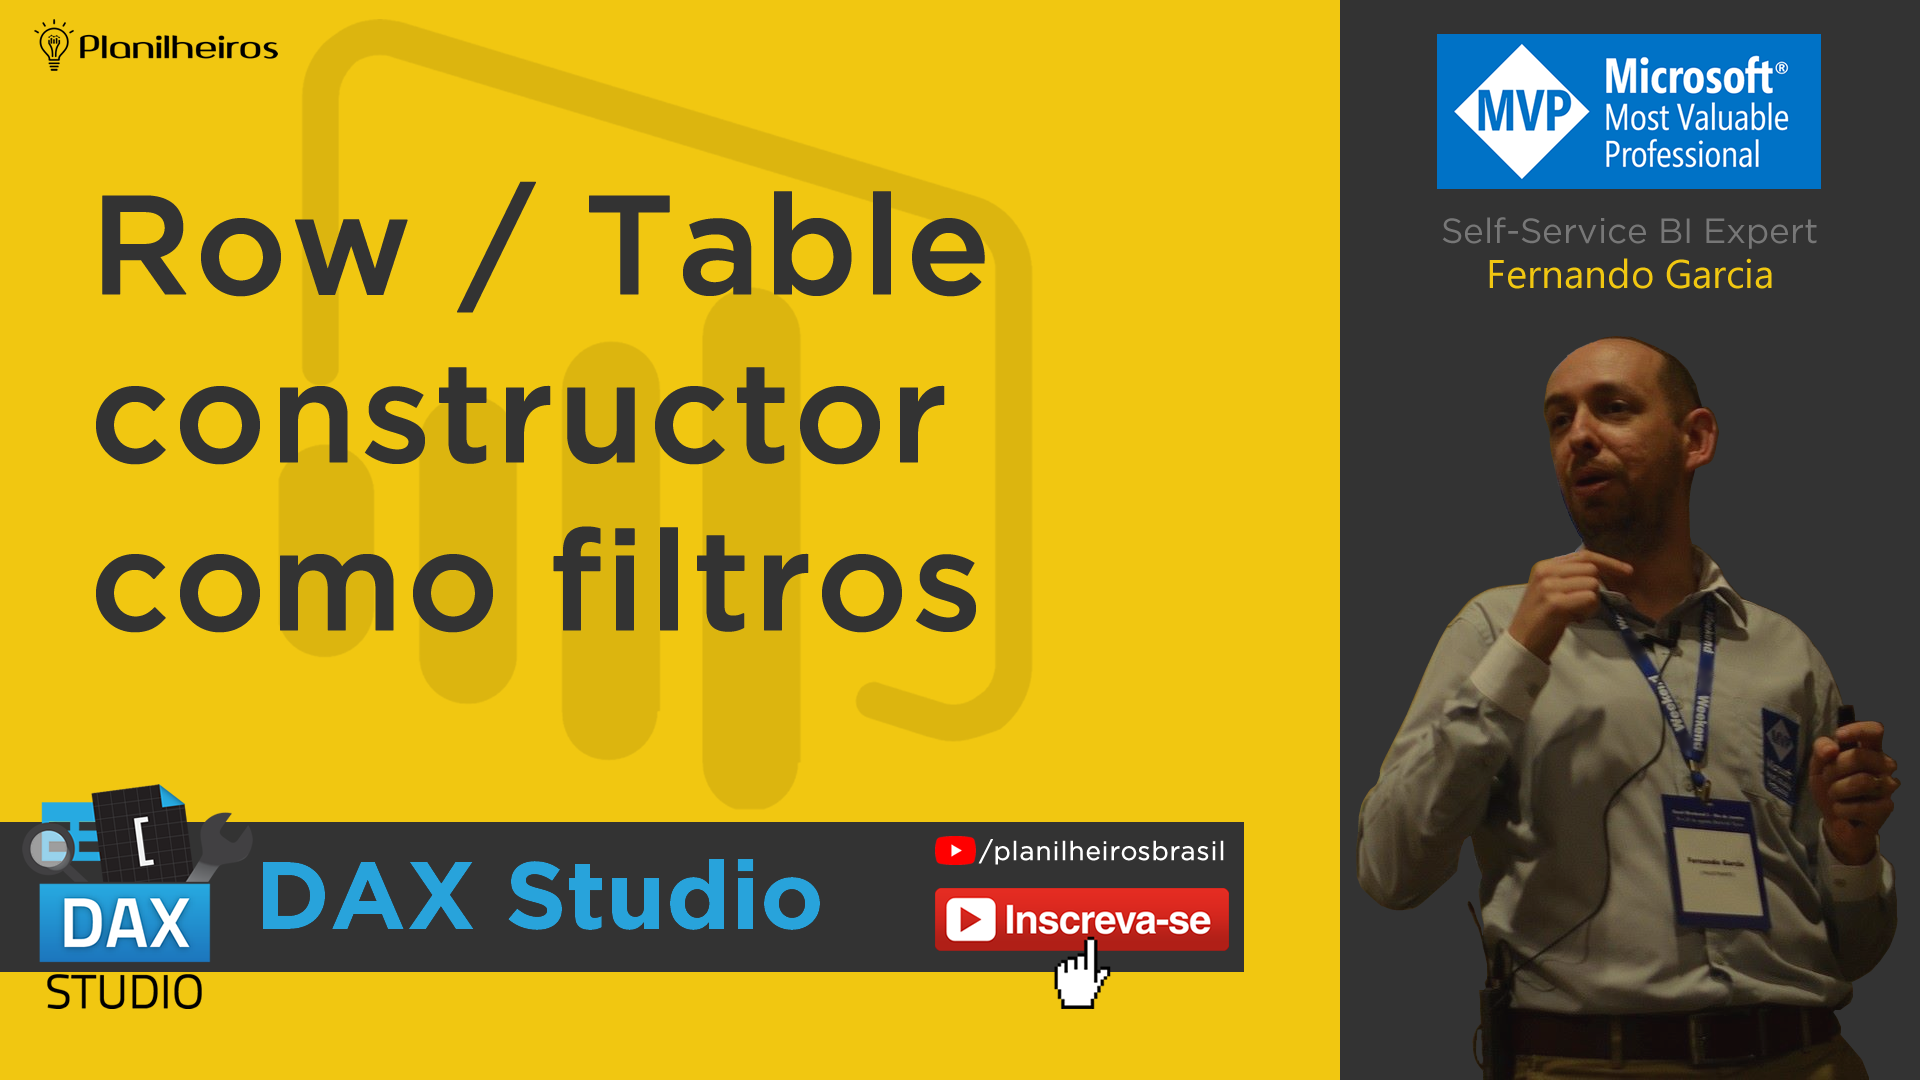 DAX Studio – Row/Table Constructor como filtros